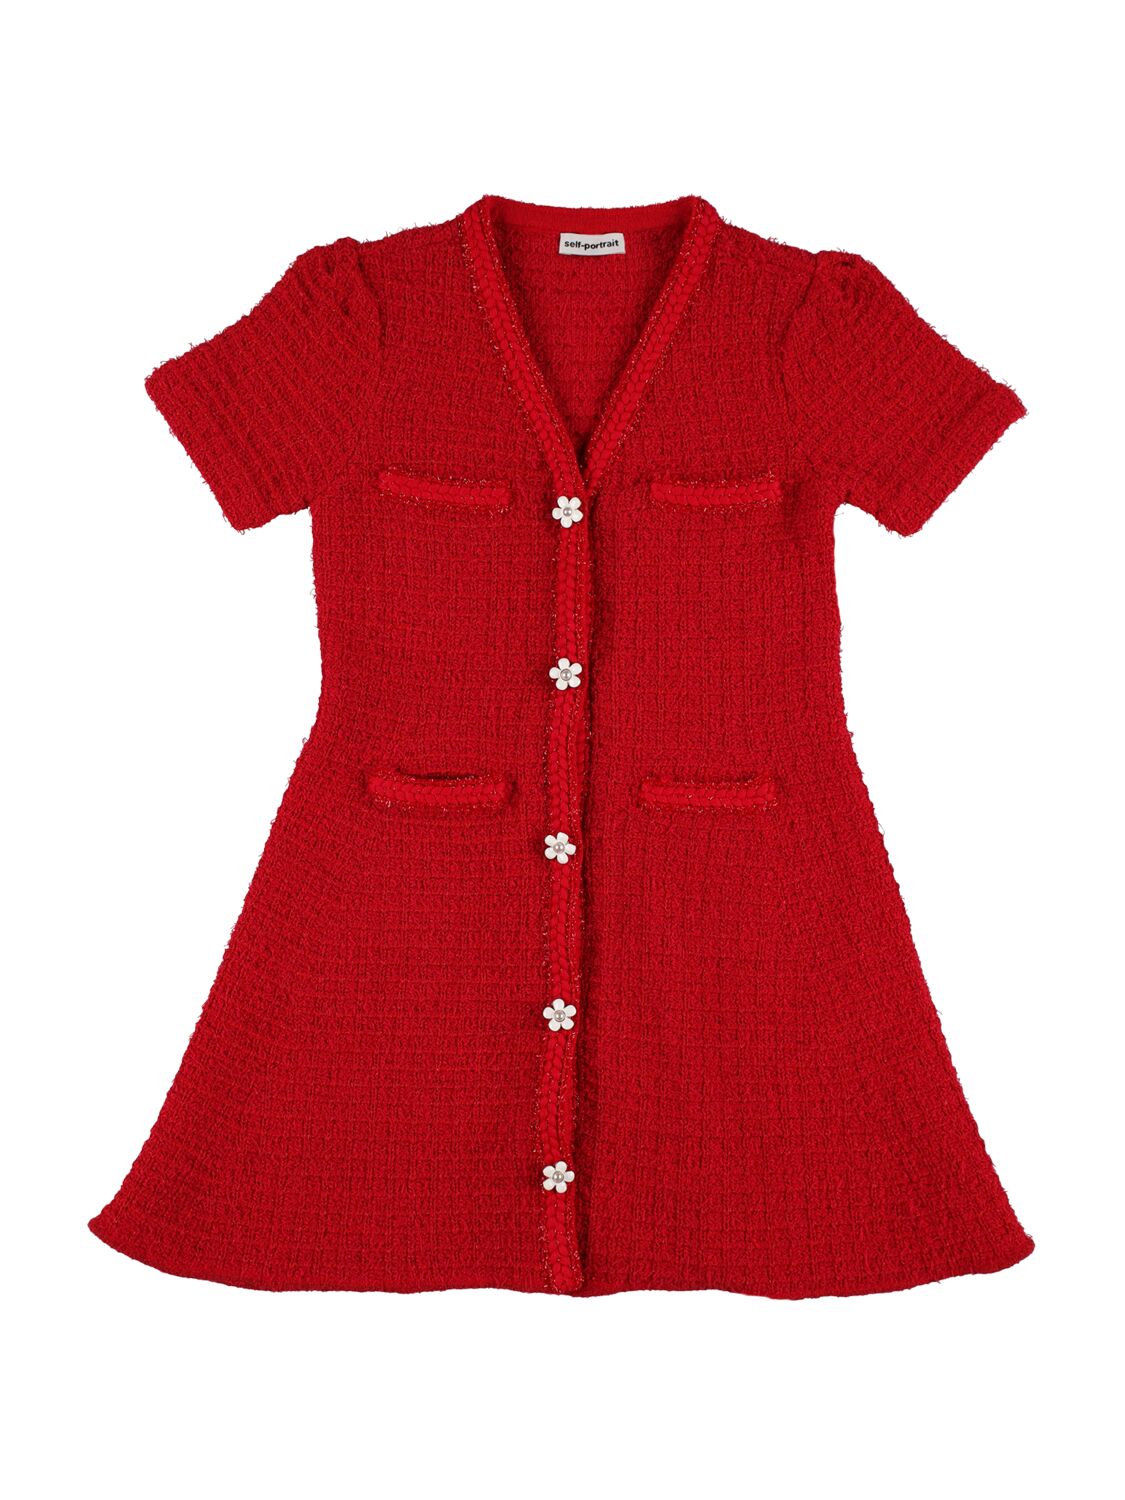 Self-portrait Kids' Cotton Knit Dress In Red